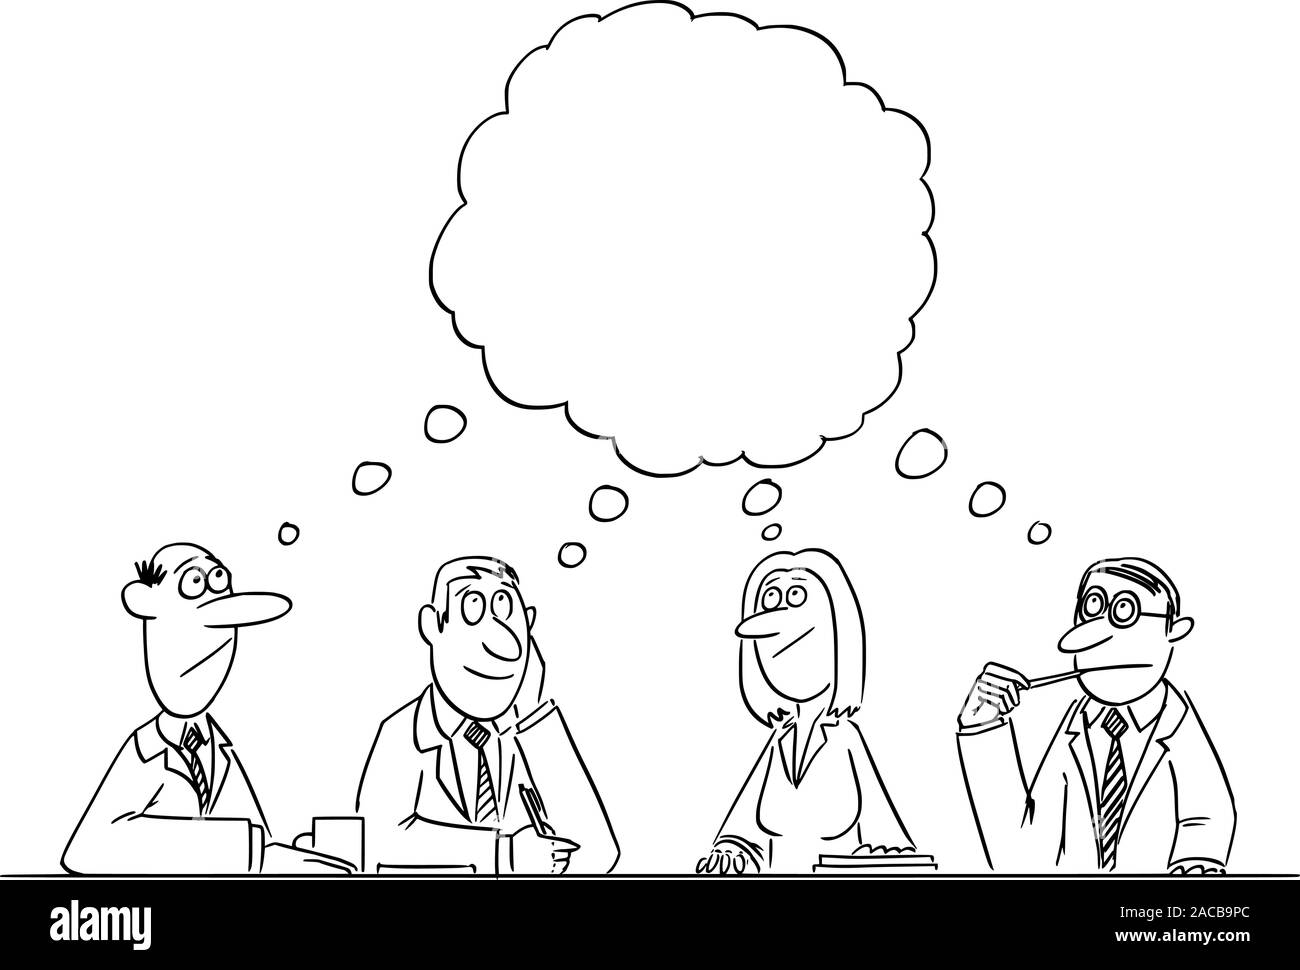 Vektor witzigen Comic cartoon Zeichnen von Business Team Meeting und Brainstorming. Team ist Denken und Brainstorming in die Lösung des Problems. Stock Vektor